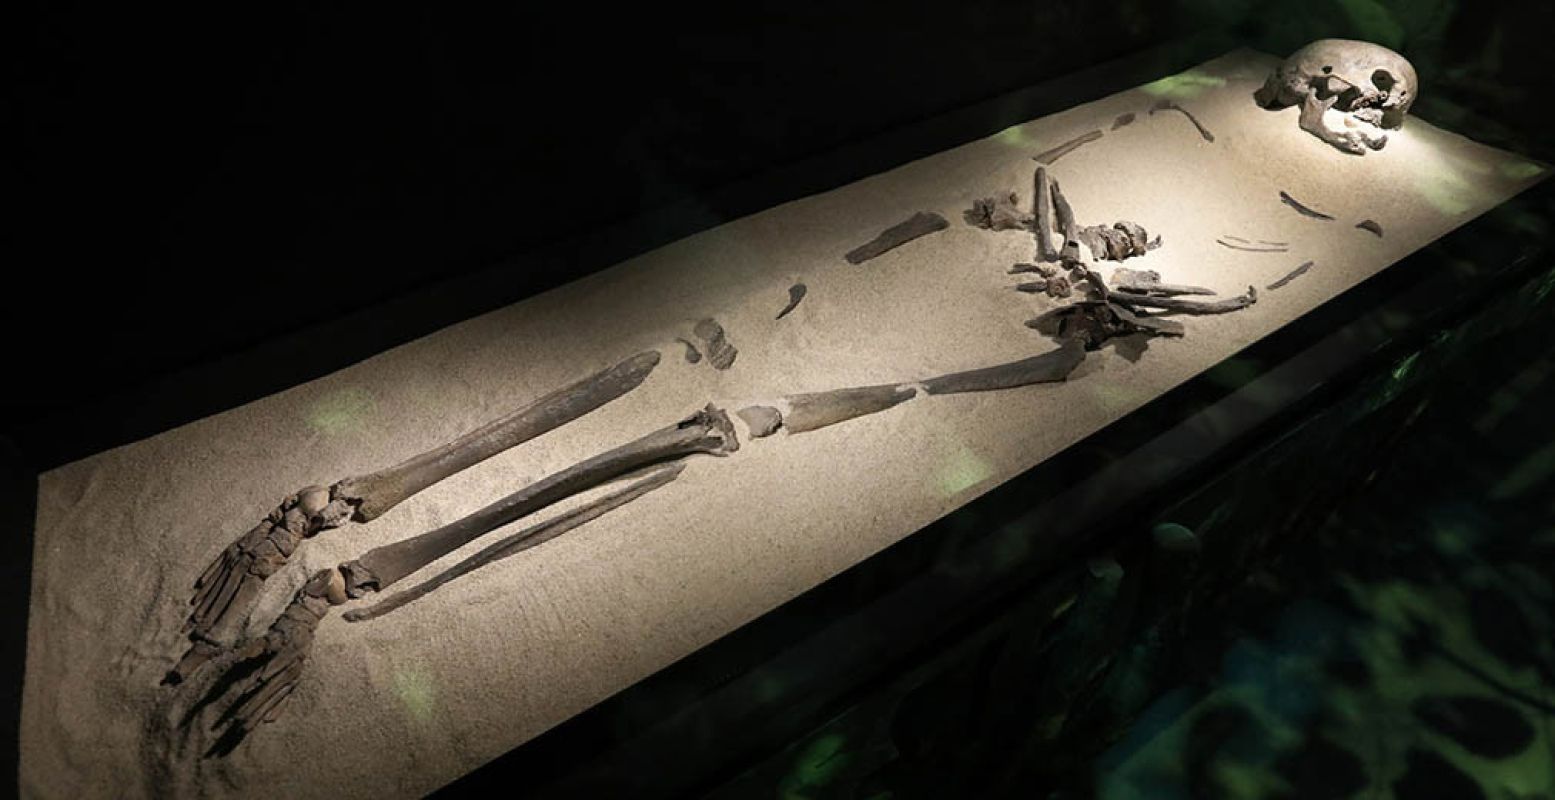 Het skelet van Trijntje, de oudste mens van Nederland - ze komt uit 5500 voor Christus. Foto: Nederlands Openluchtmuseum.